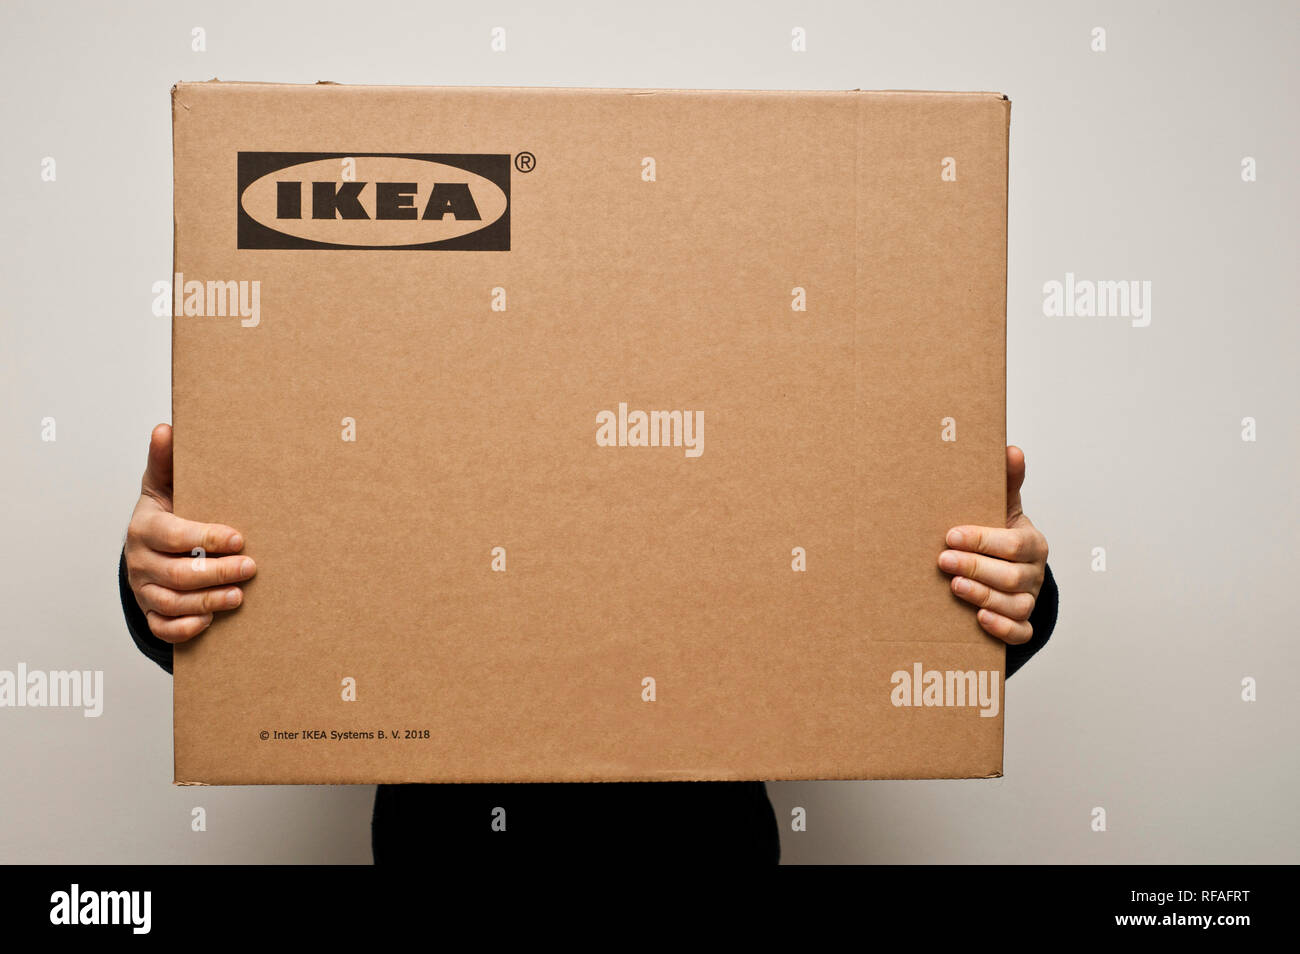 man holding an Ikea cardboard box Stock Photo